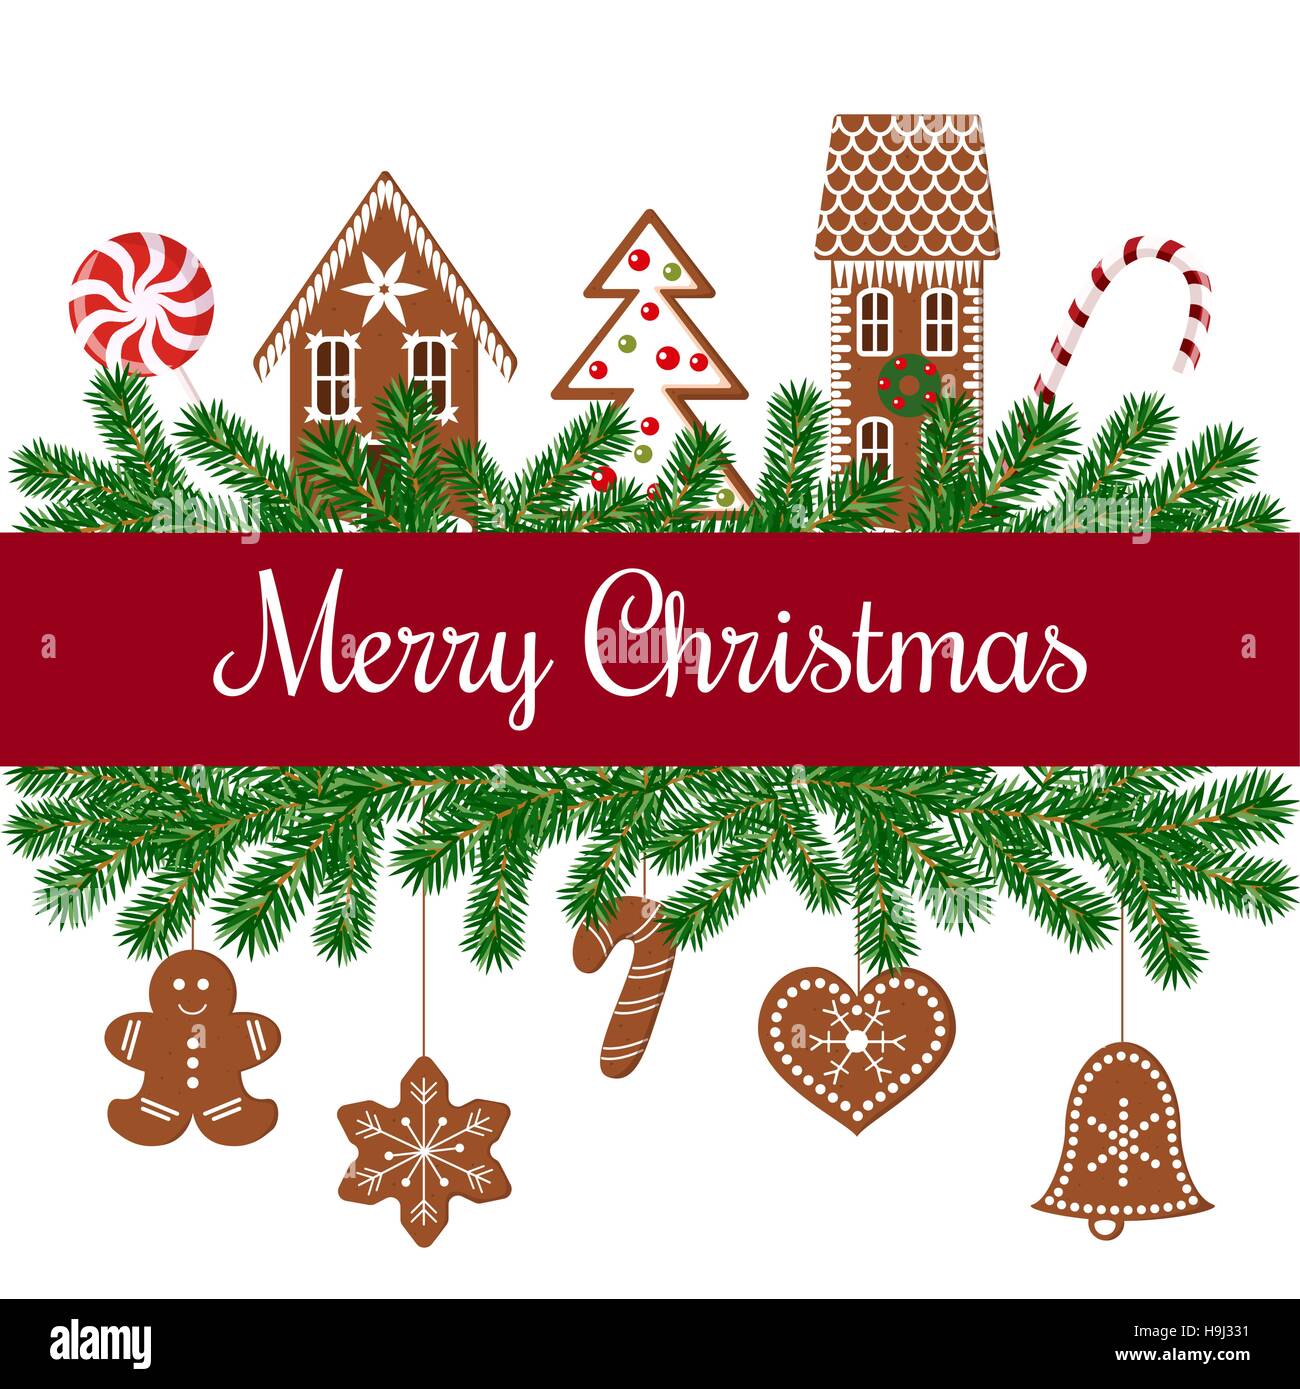 Joyeux Noël salutations. arbre de Noël guirlandes avec les chiffres d'épice, ruban rouge, ornament balls, fairy lights, archets. Vector illustration. Pour postc Illustration de Vecteur